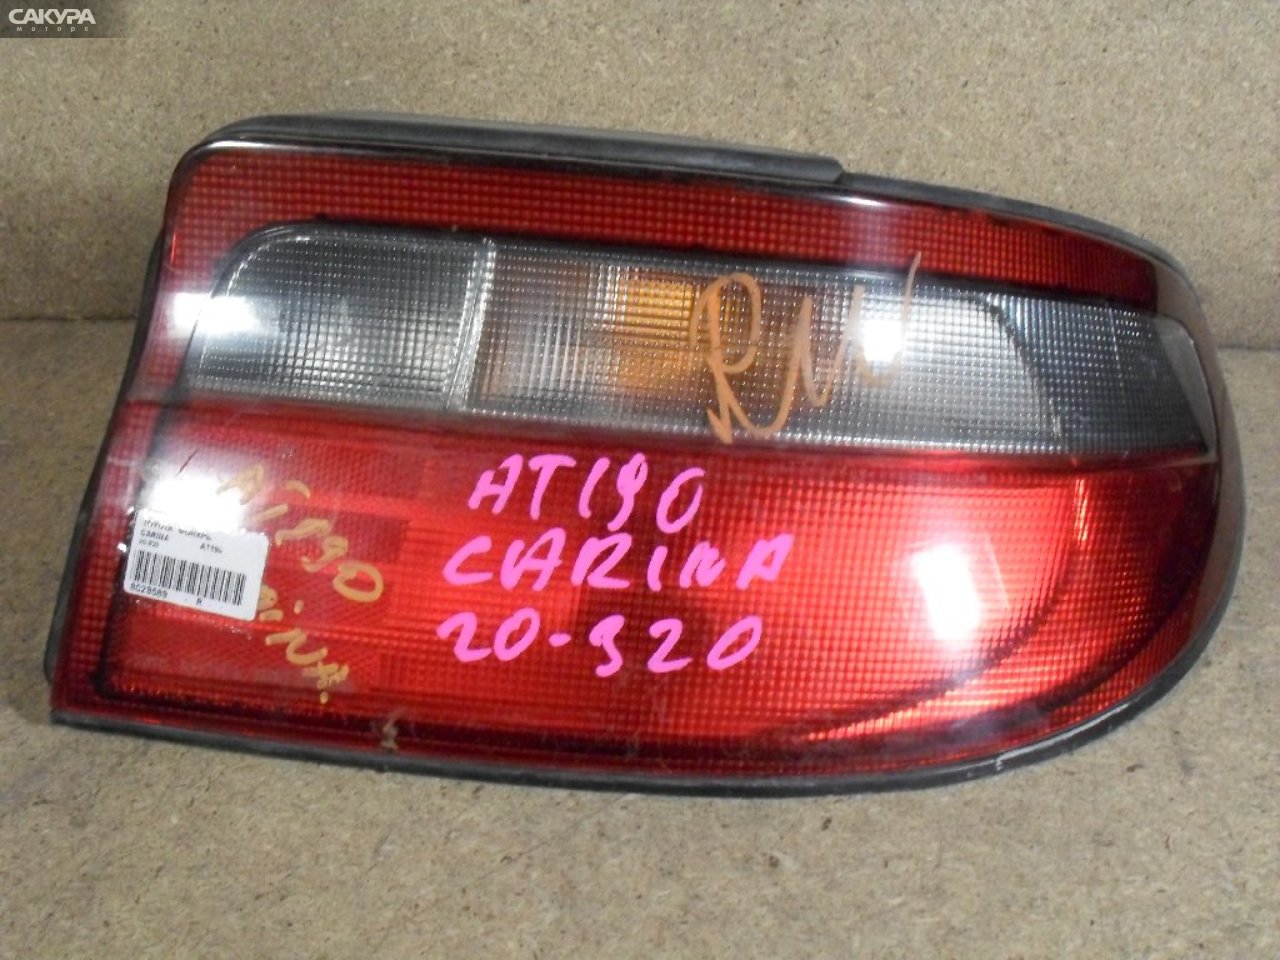 Фонарь стоп-сигнала правый Toyota Carina AT190 20-320: купить в Сакура Абакан.